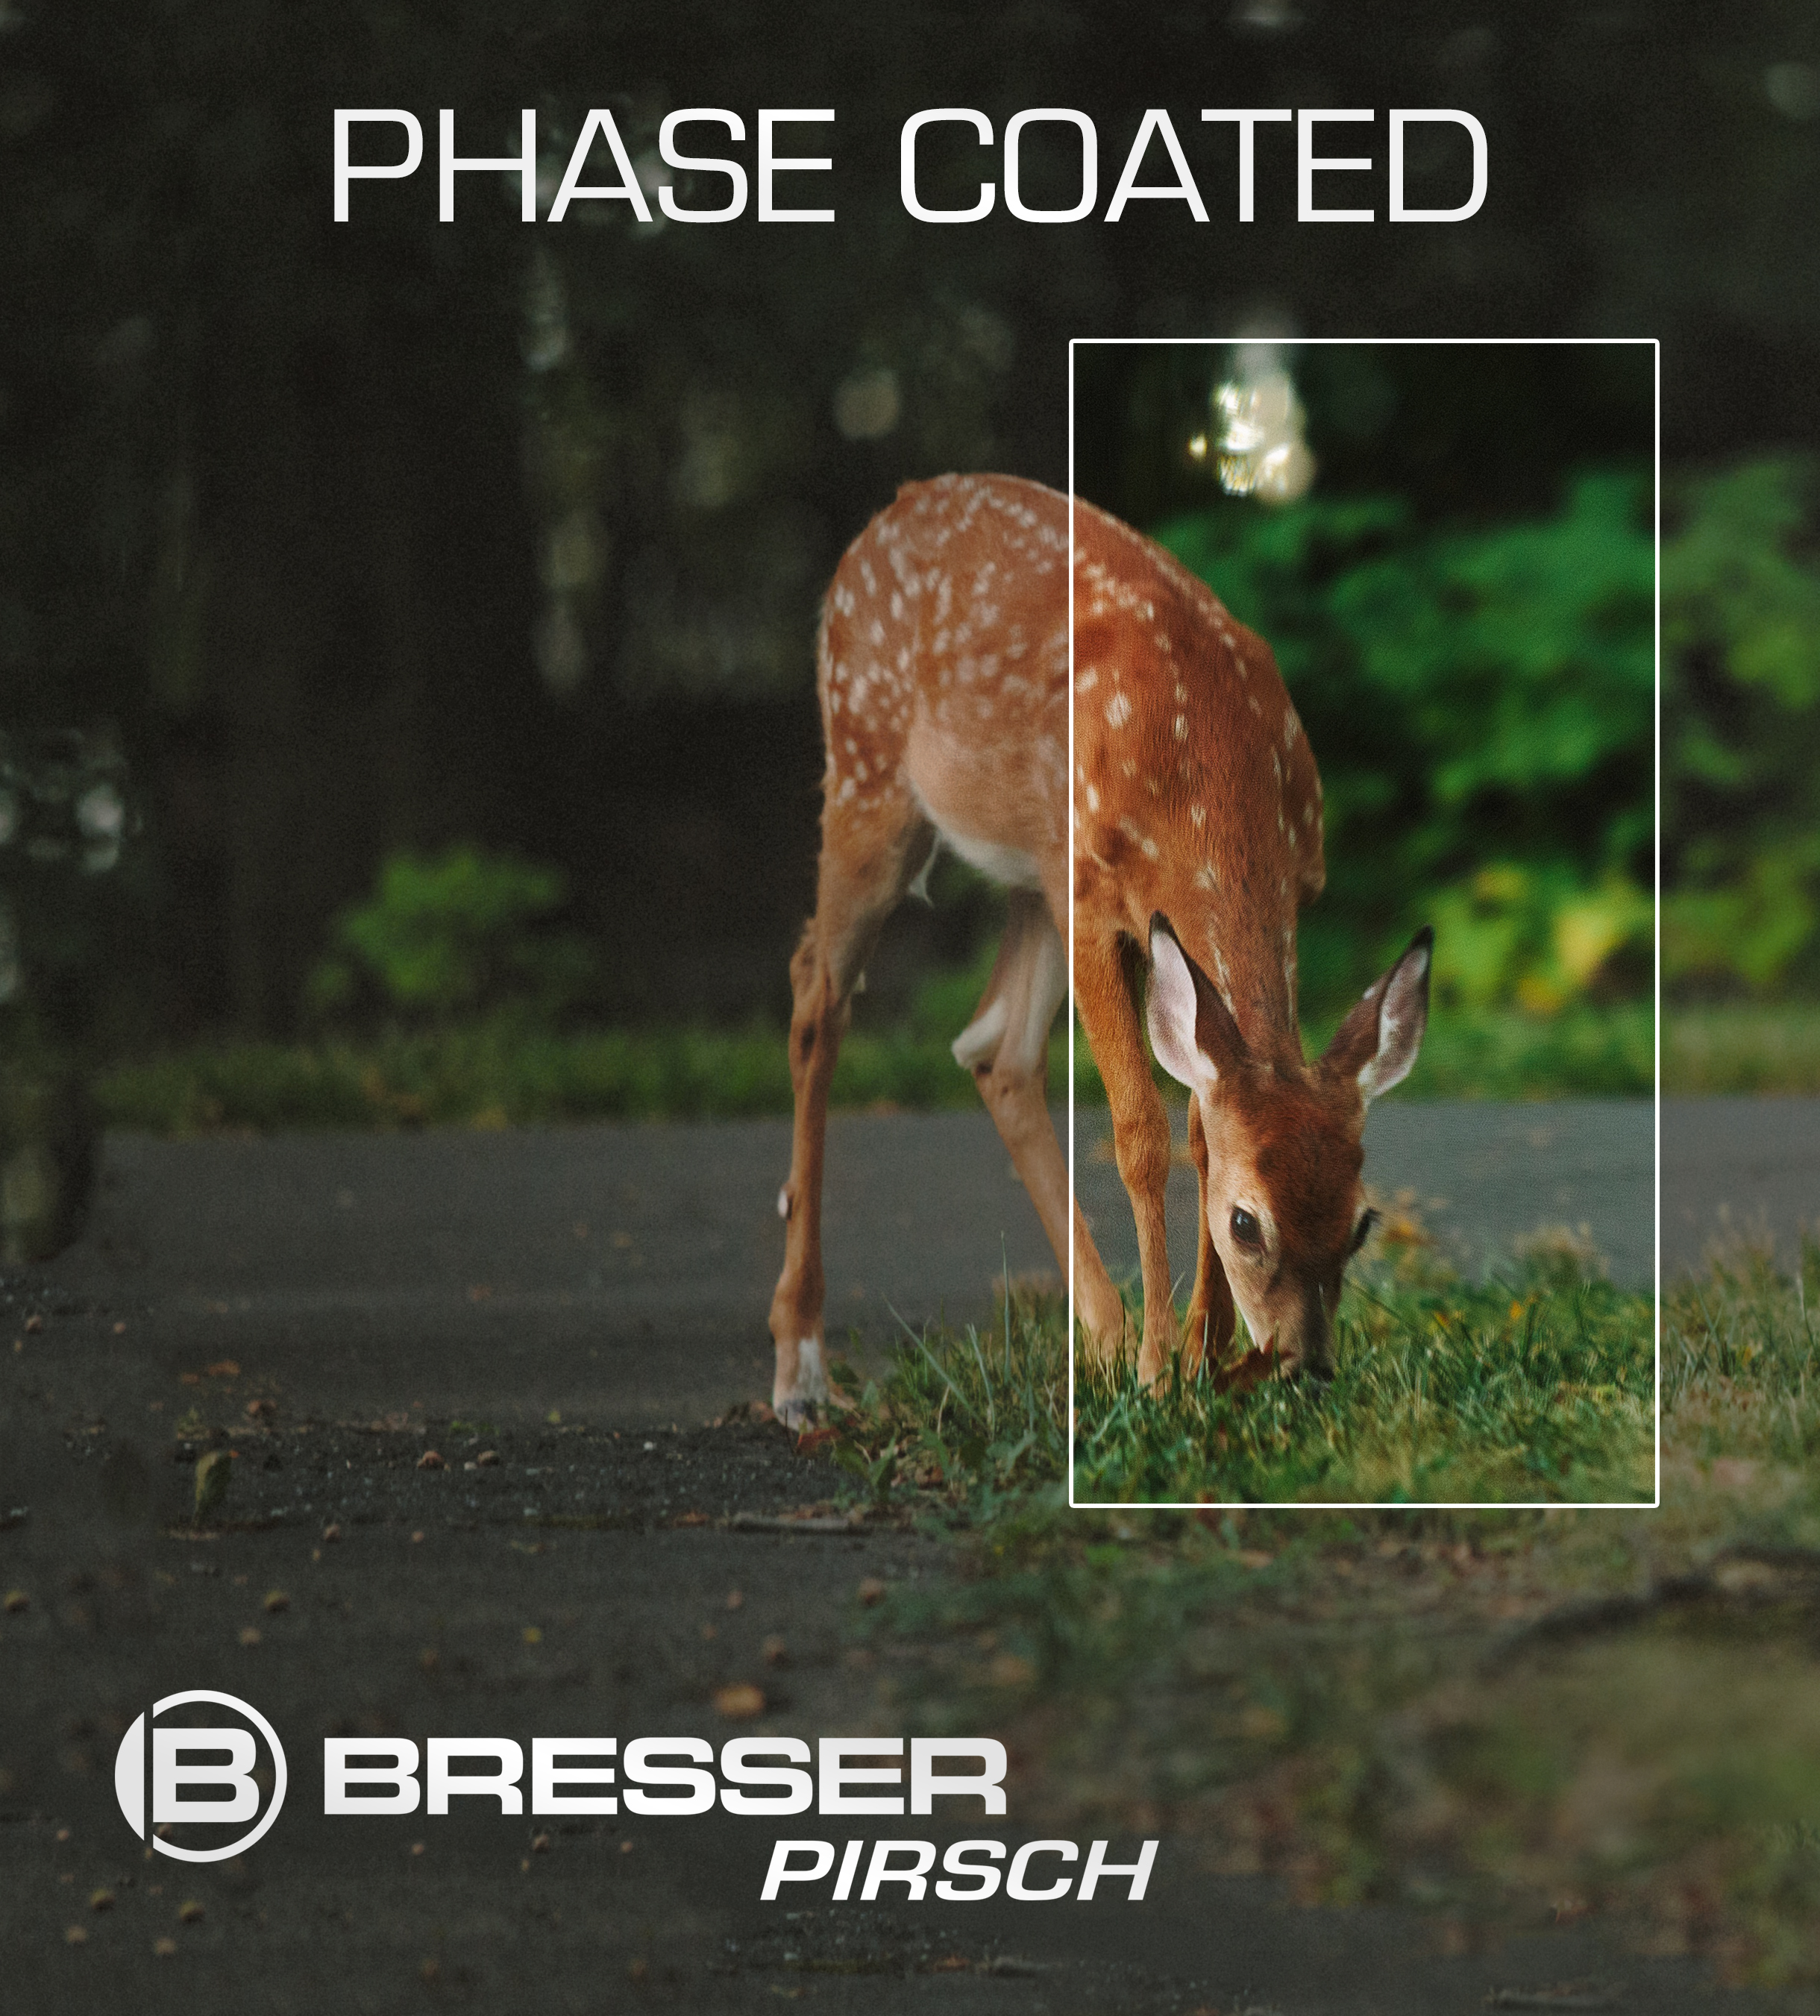 BRESSER Pirsch 8x56 mit Phasenvergütung Fernglas mm, 8, 56